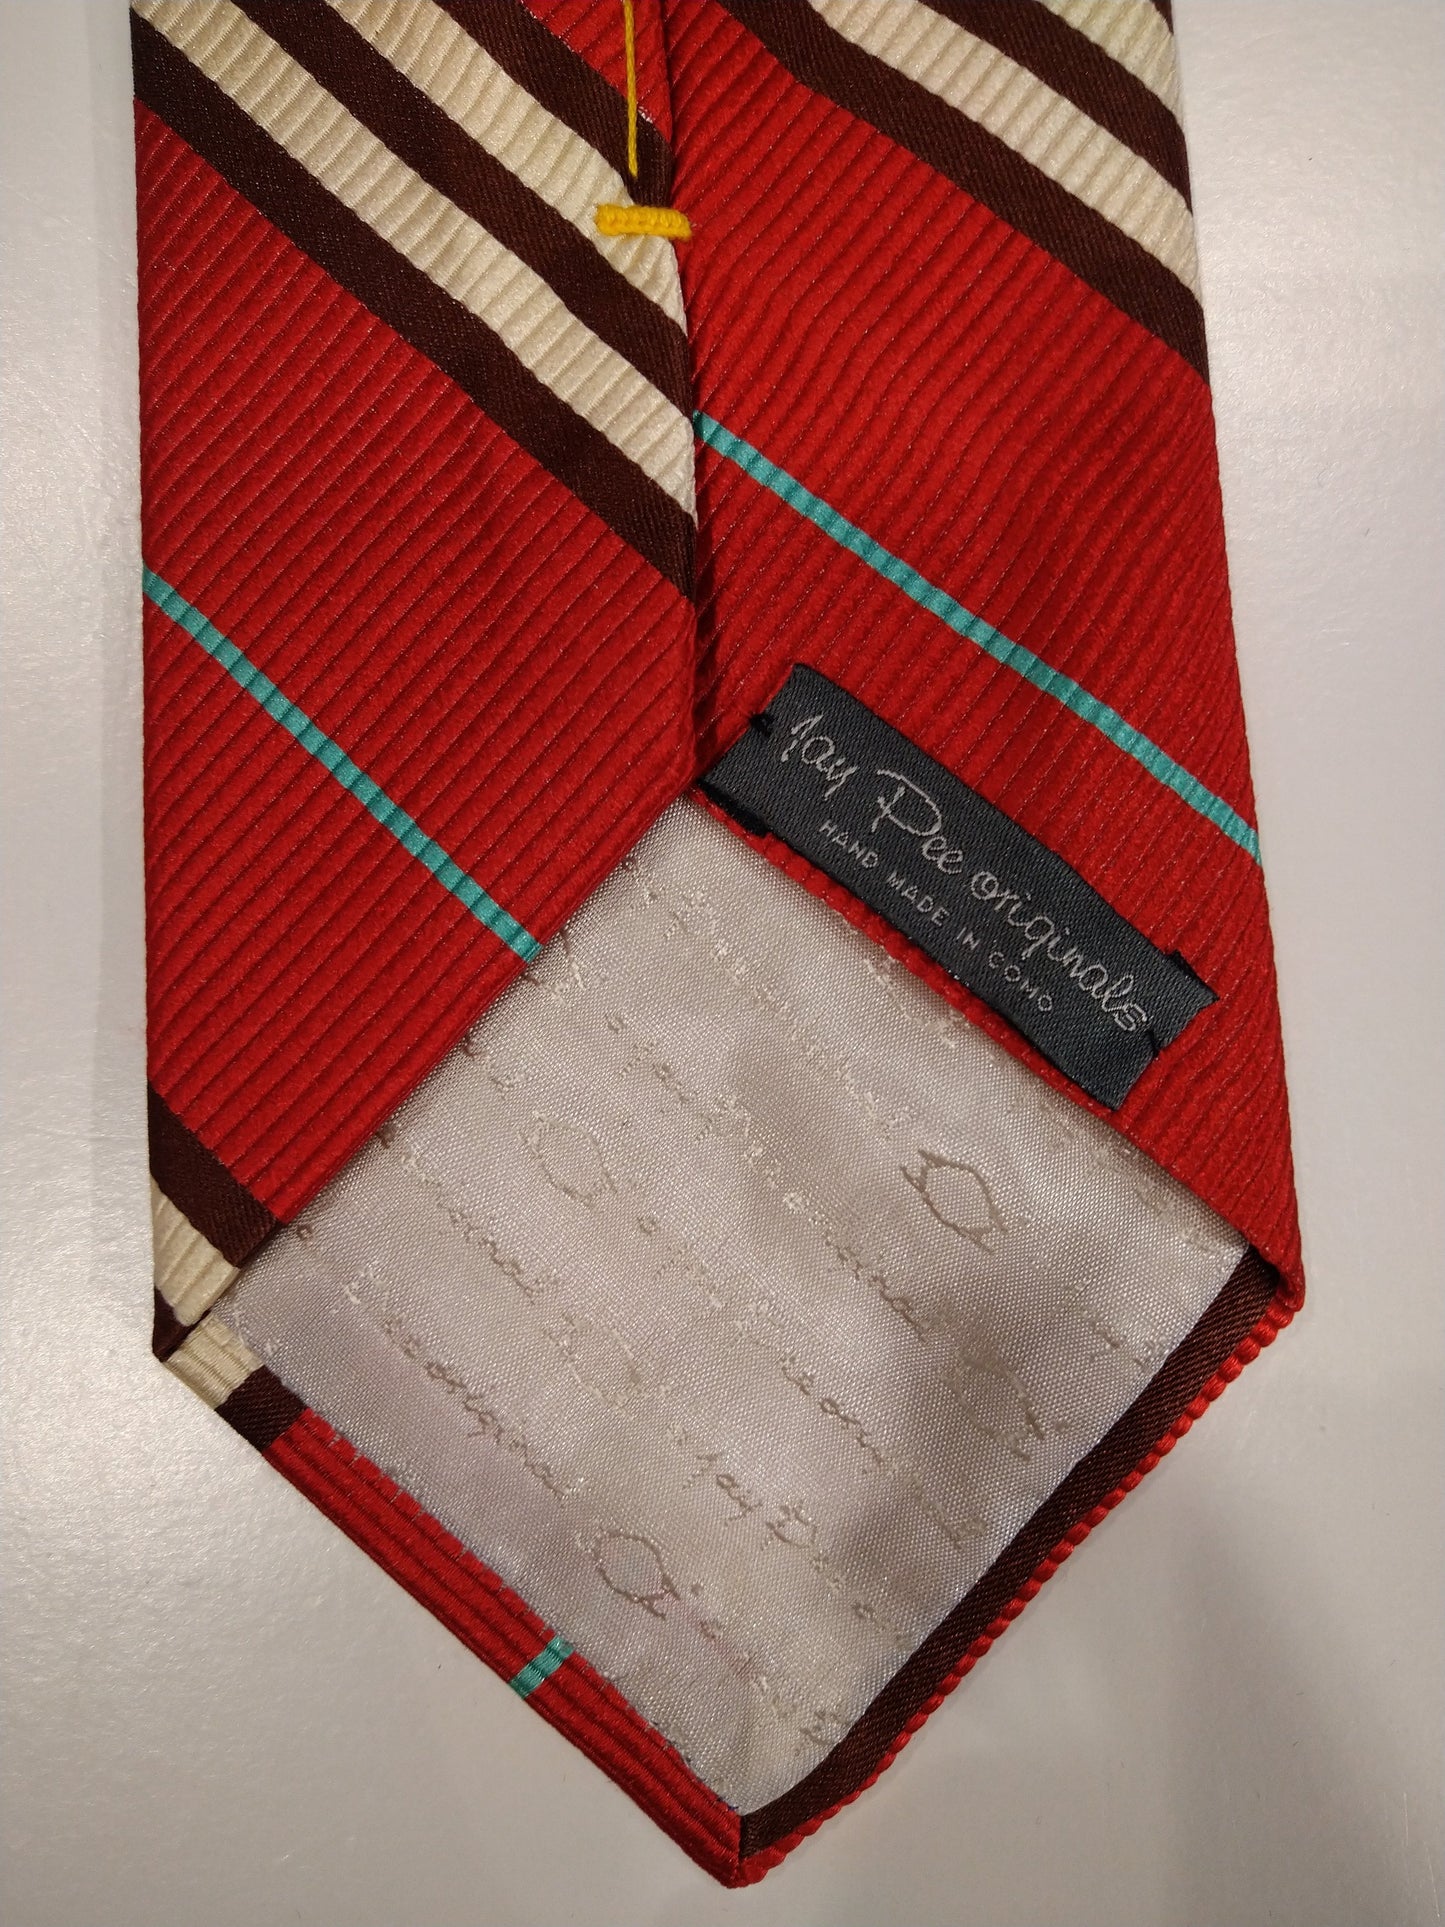 Jay Pee Original Hand en la corbata de seda como. Rojo / marrón / blanco / azul rayado.